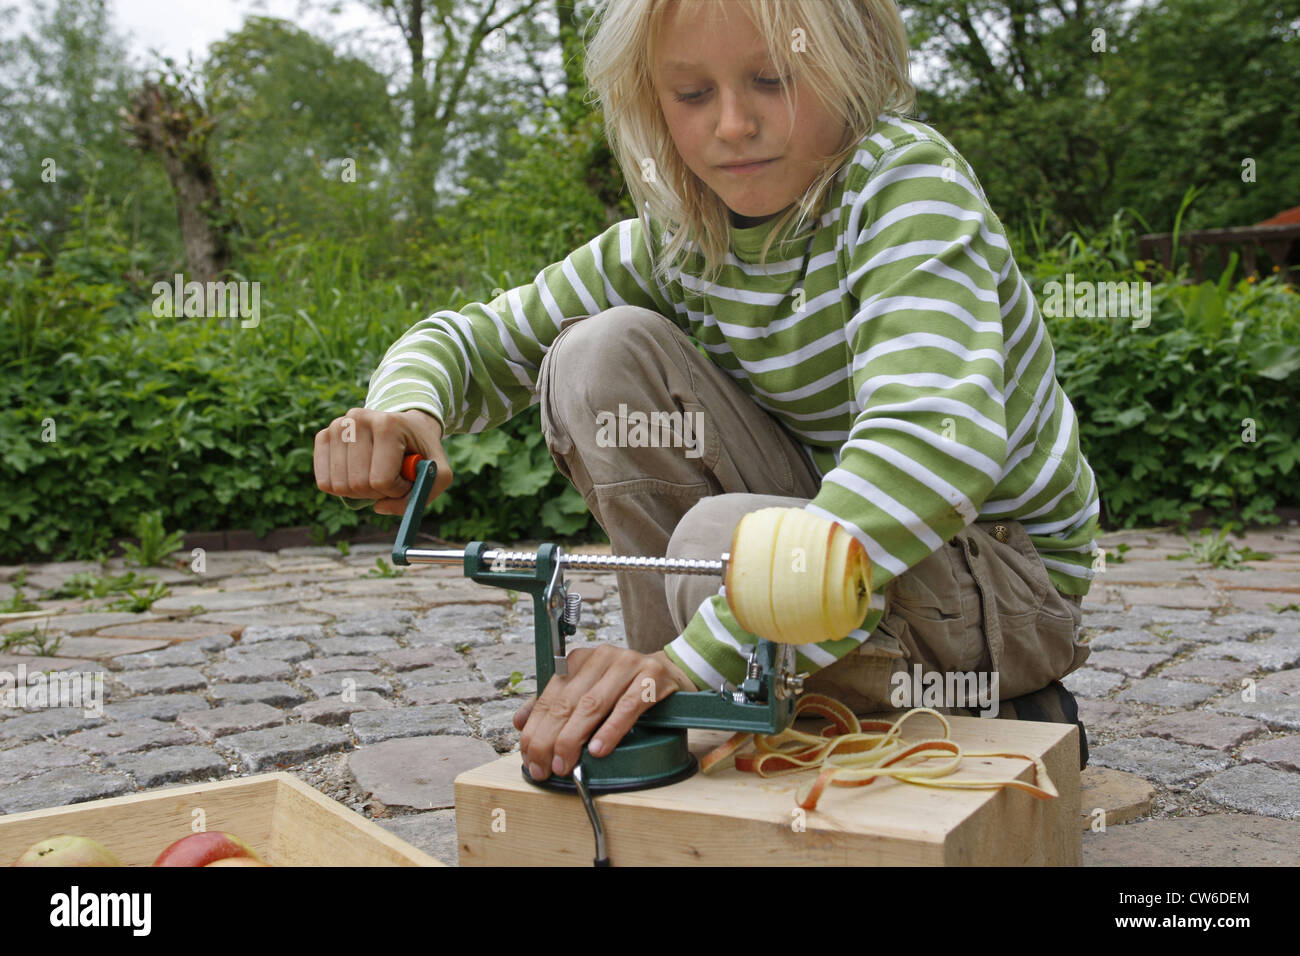 Kinder machen einen Apfel Dörrgerät; Kind ist schälen und schneiden einen  Apfel mit einem Apfel-Schälmaschine, Deutschland Stockfotografie - Alamy